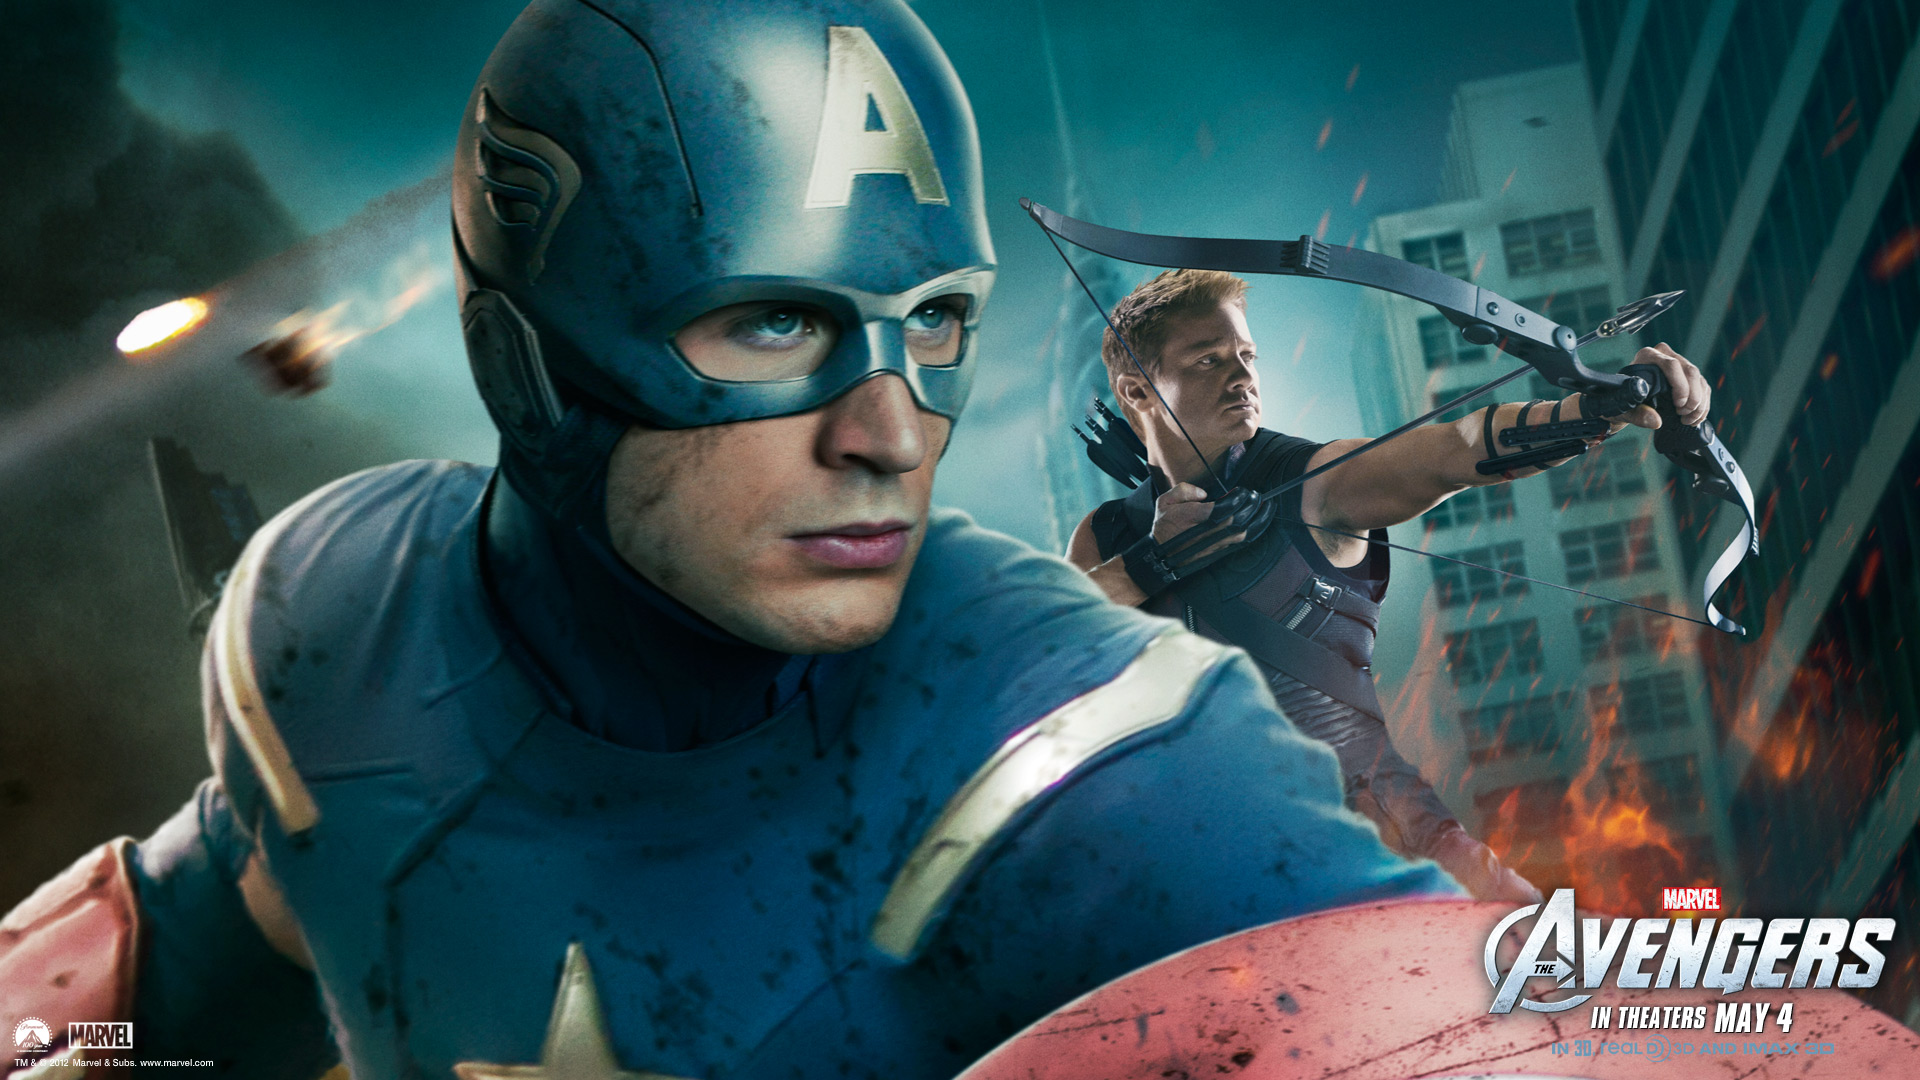 Avengers Captain America Chris Evans Hawkeye Jeremy Renner 1920x1080